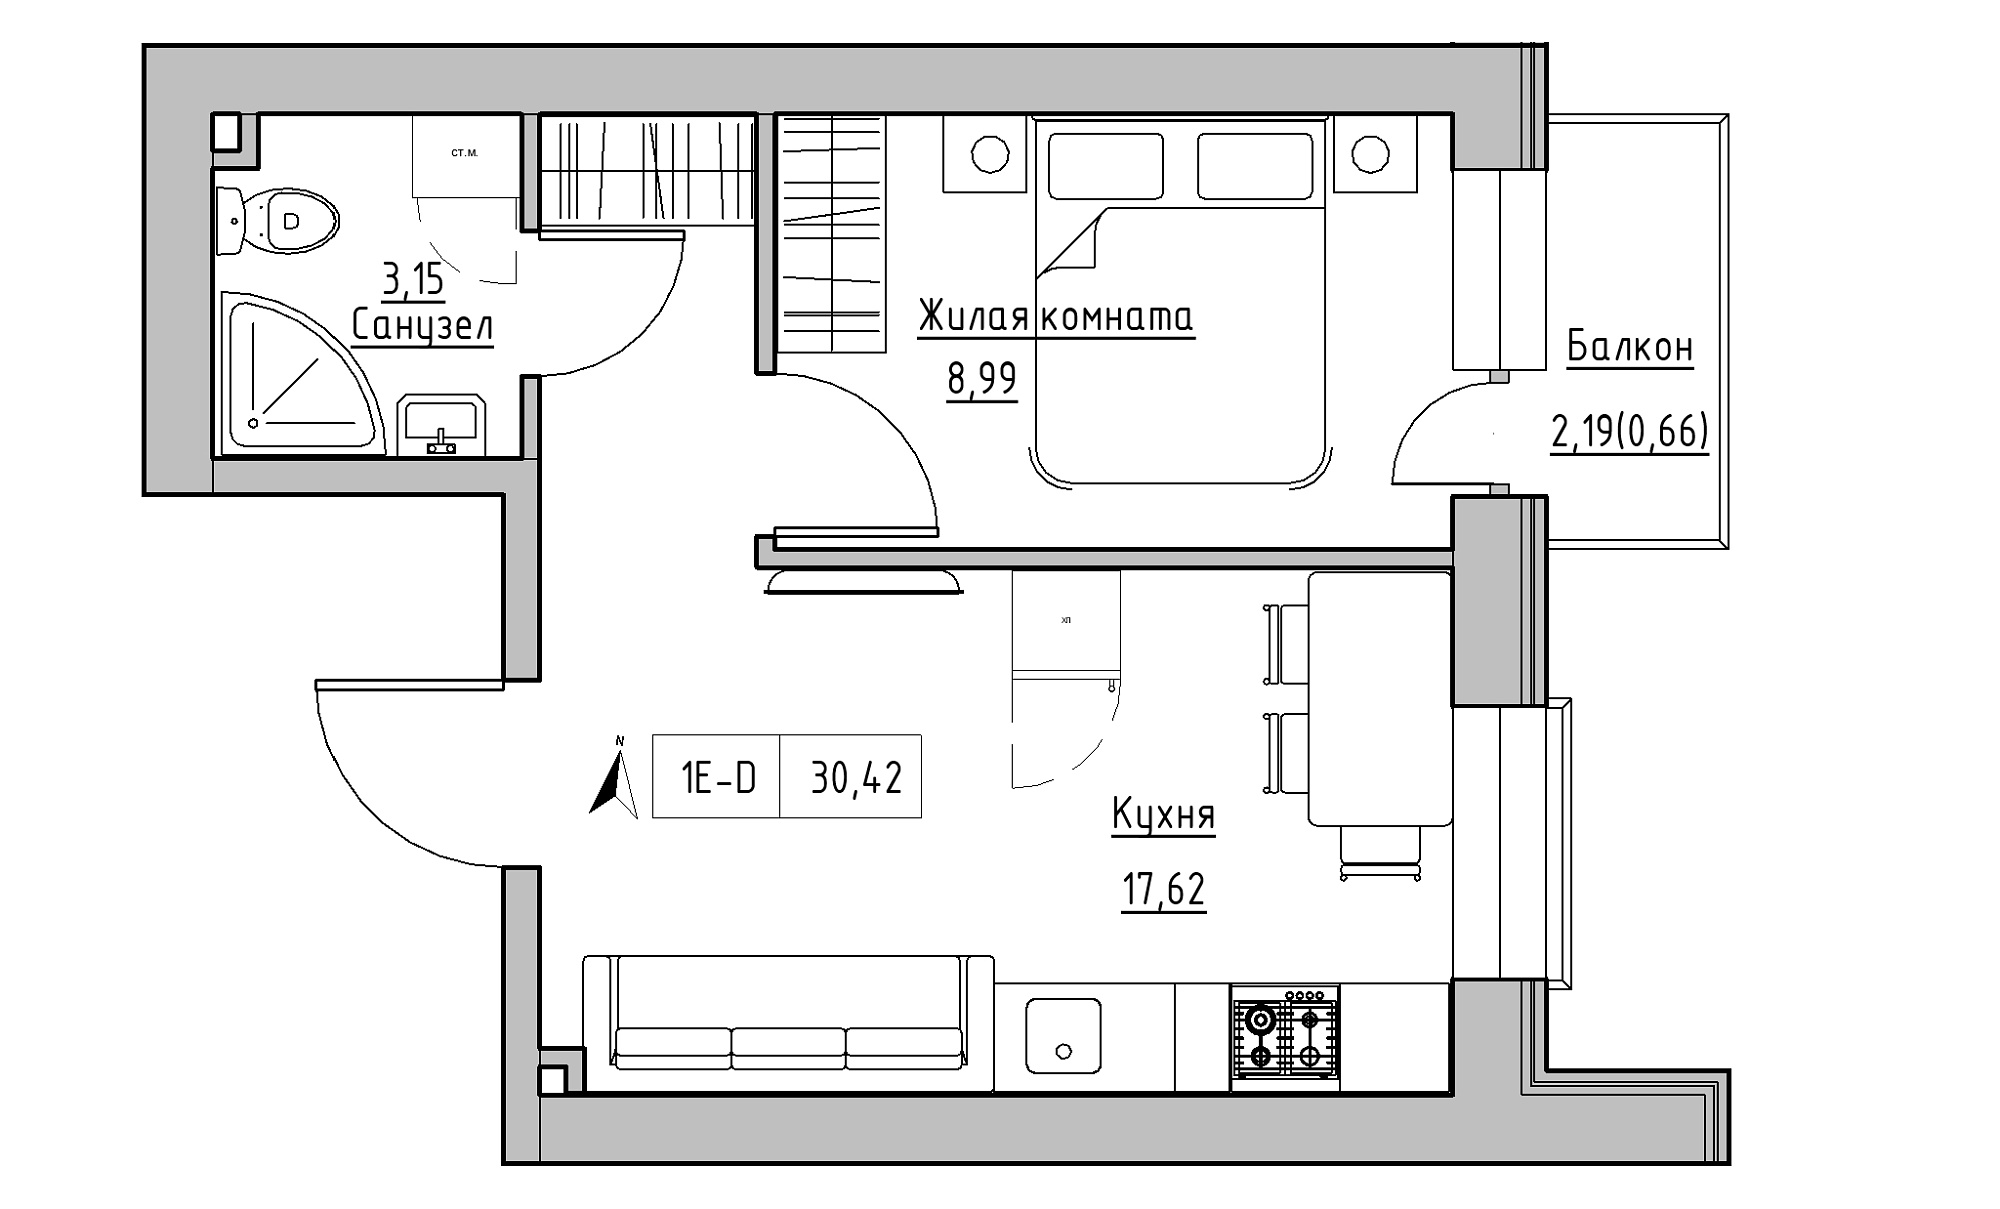 Планировка 1-к квартира площей 30.42м2, KS-016-03/0013.